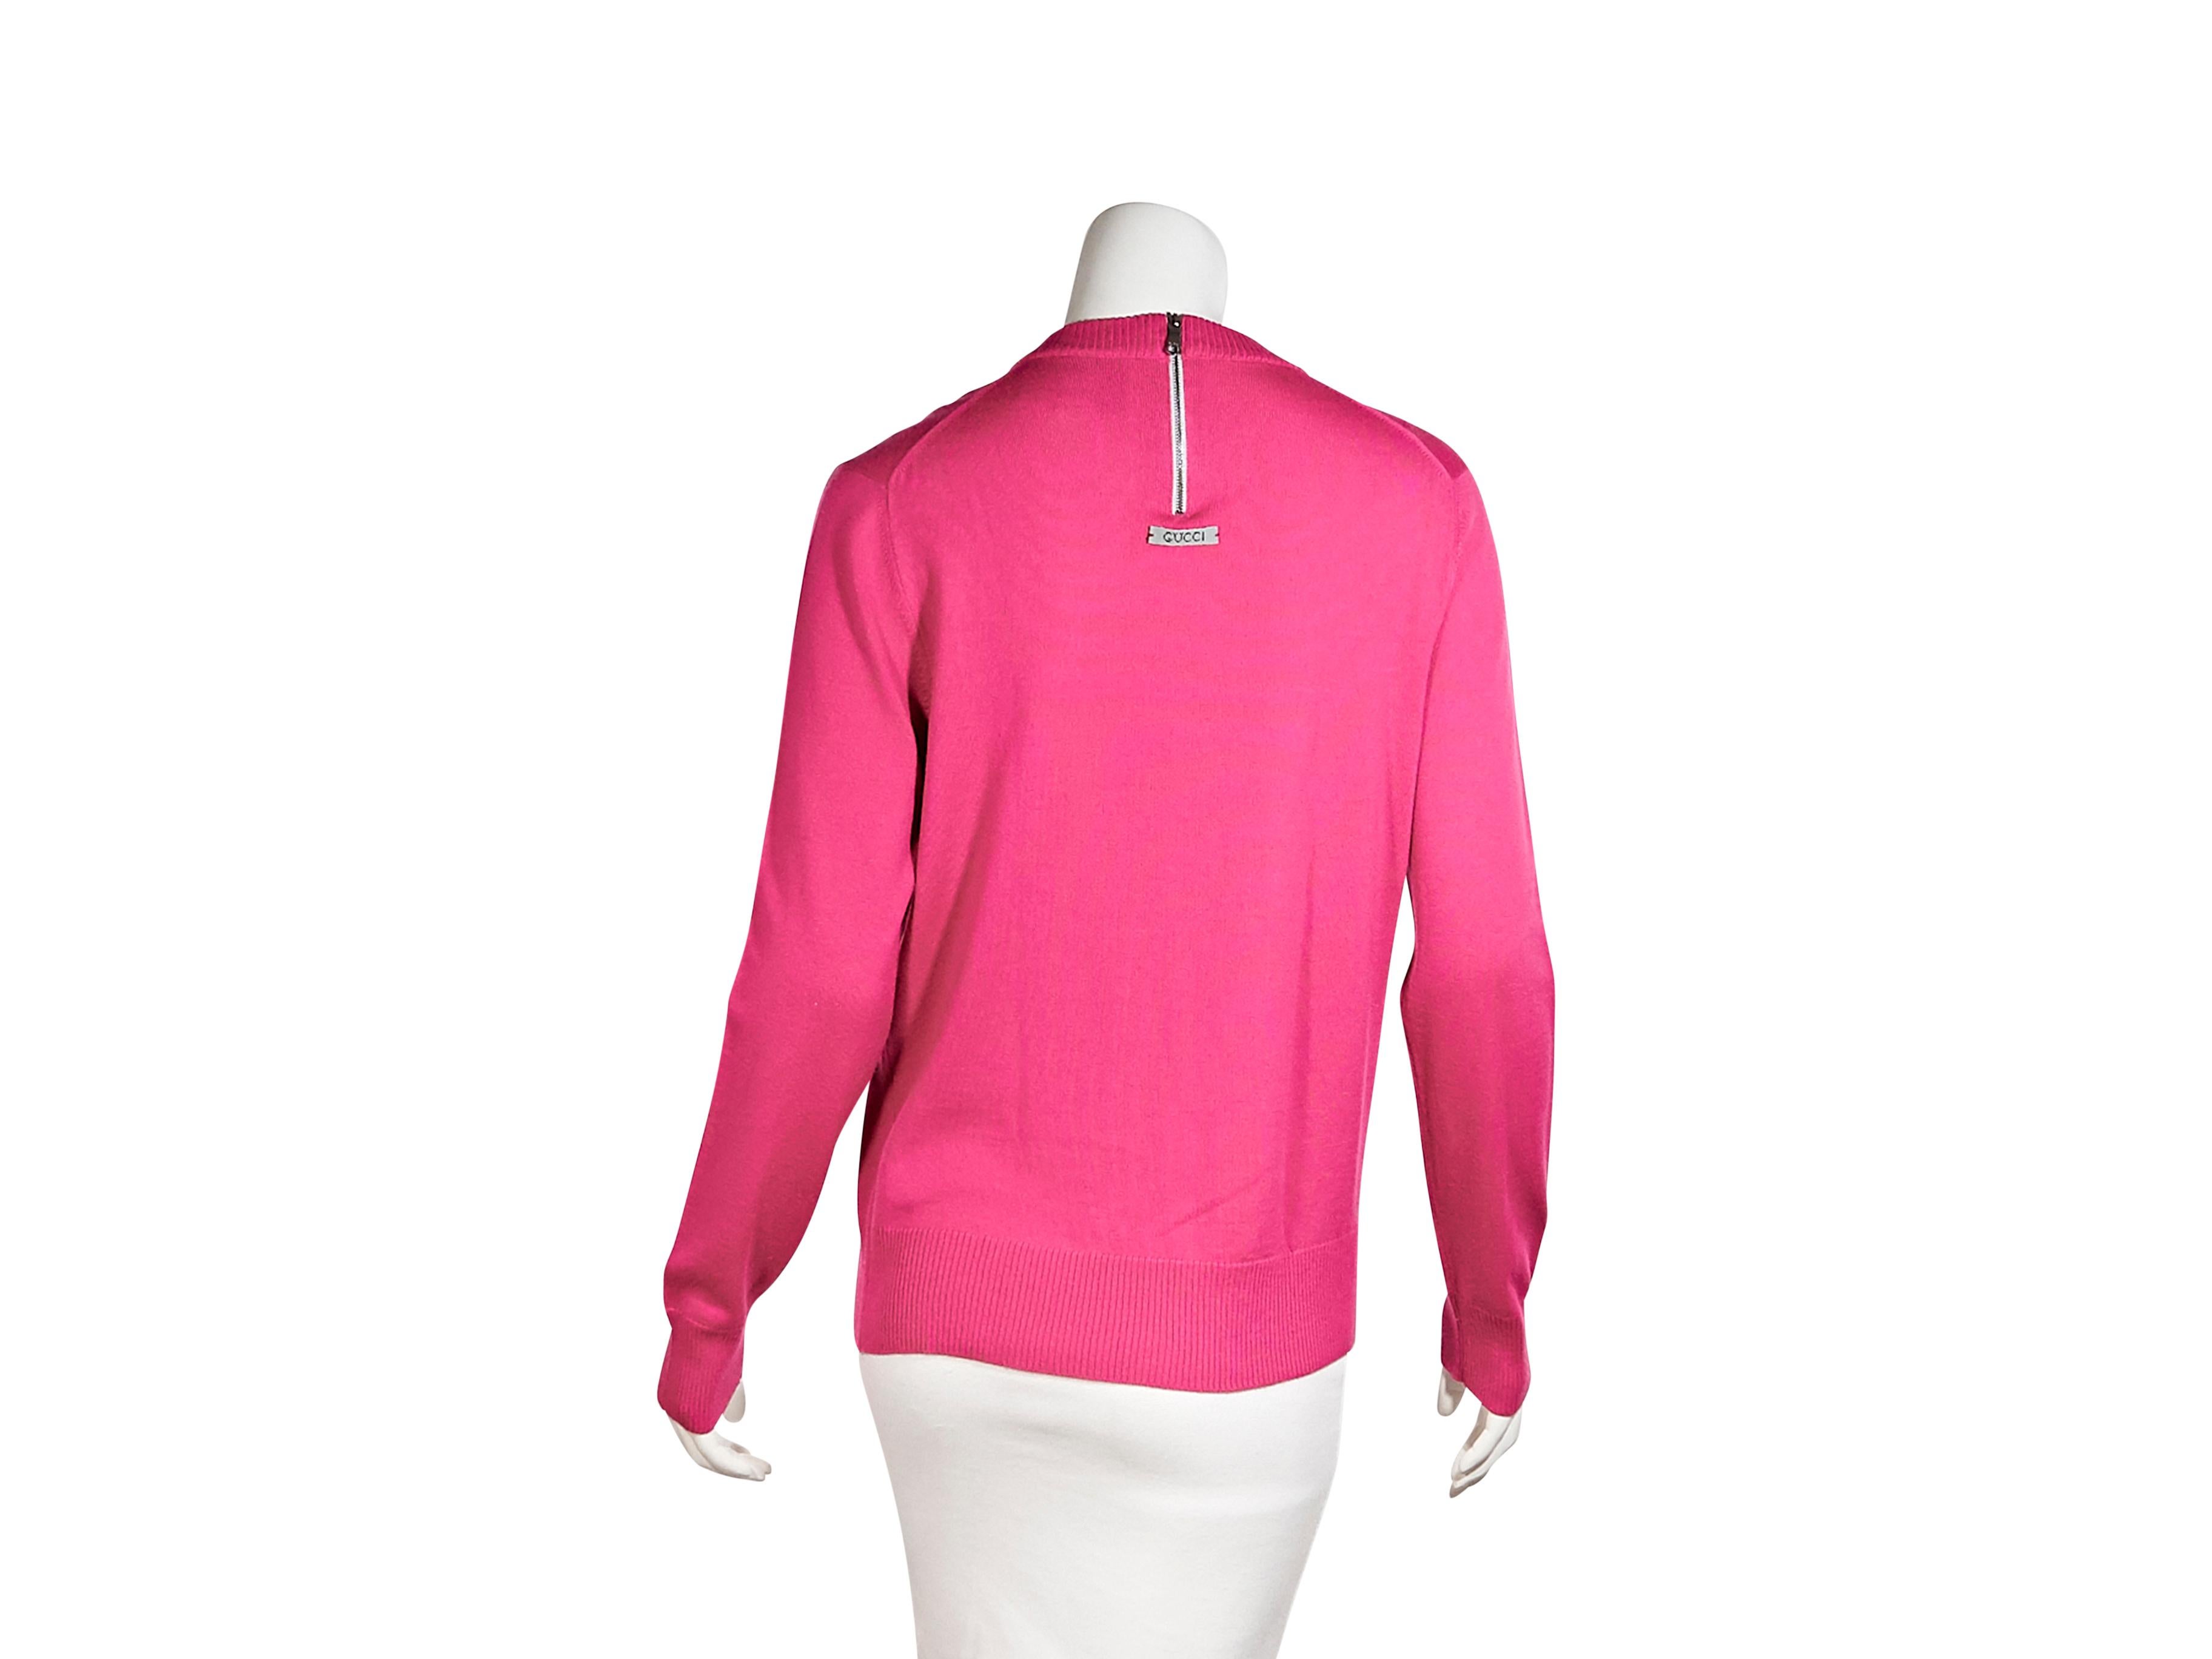 hot pink gucci shirt